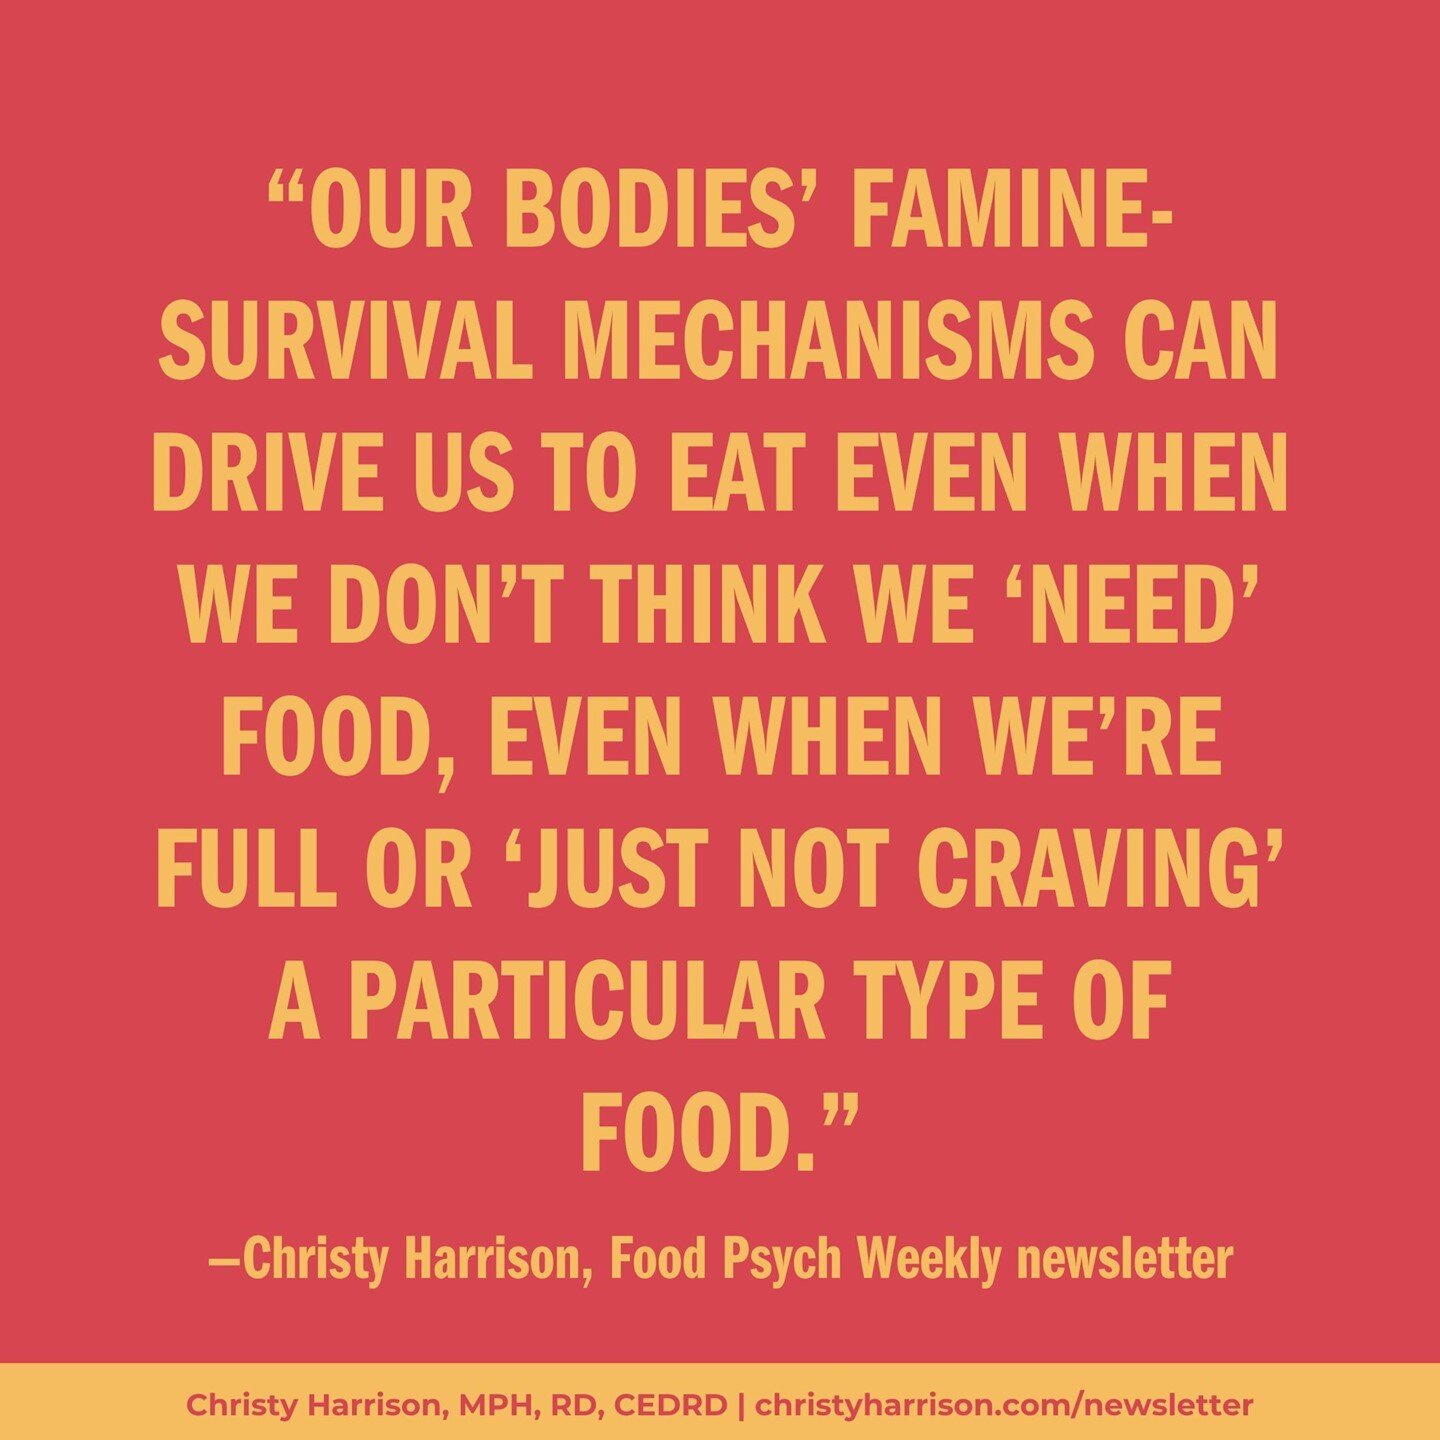 当我们节食和不规律的饮食时，我们的身体和大脑会认为这是饥荒。manbet万博提现他们不知道我们之所以故意吃得少，是因为别人告诉我们这样有益健康。他们也知道，我